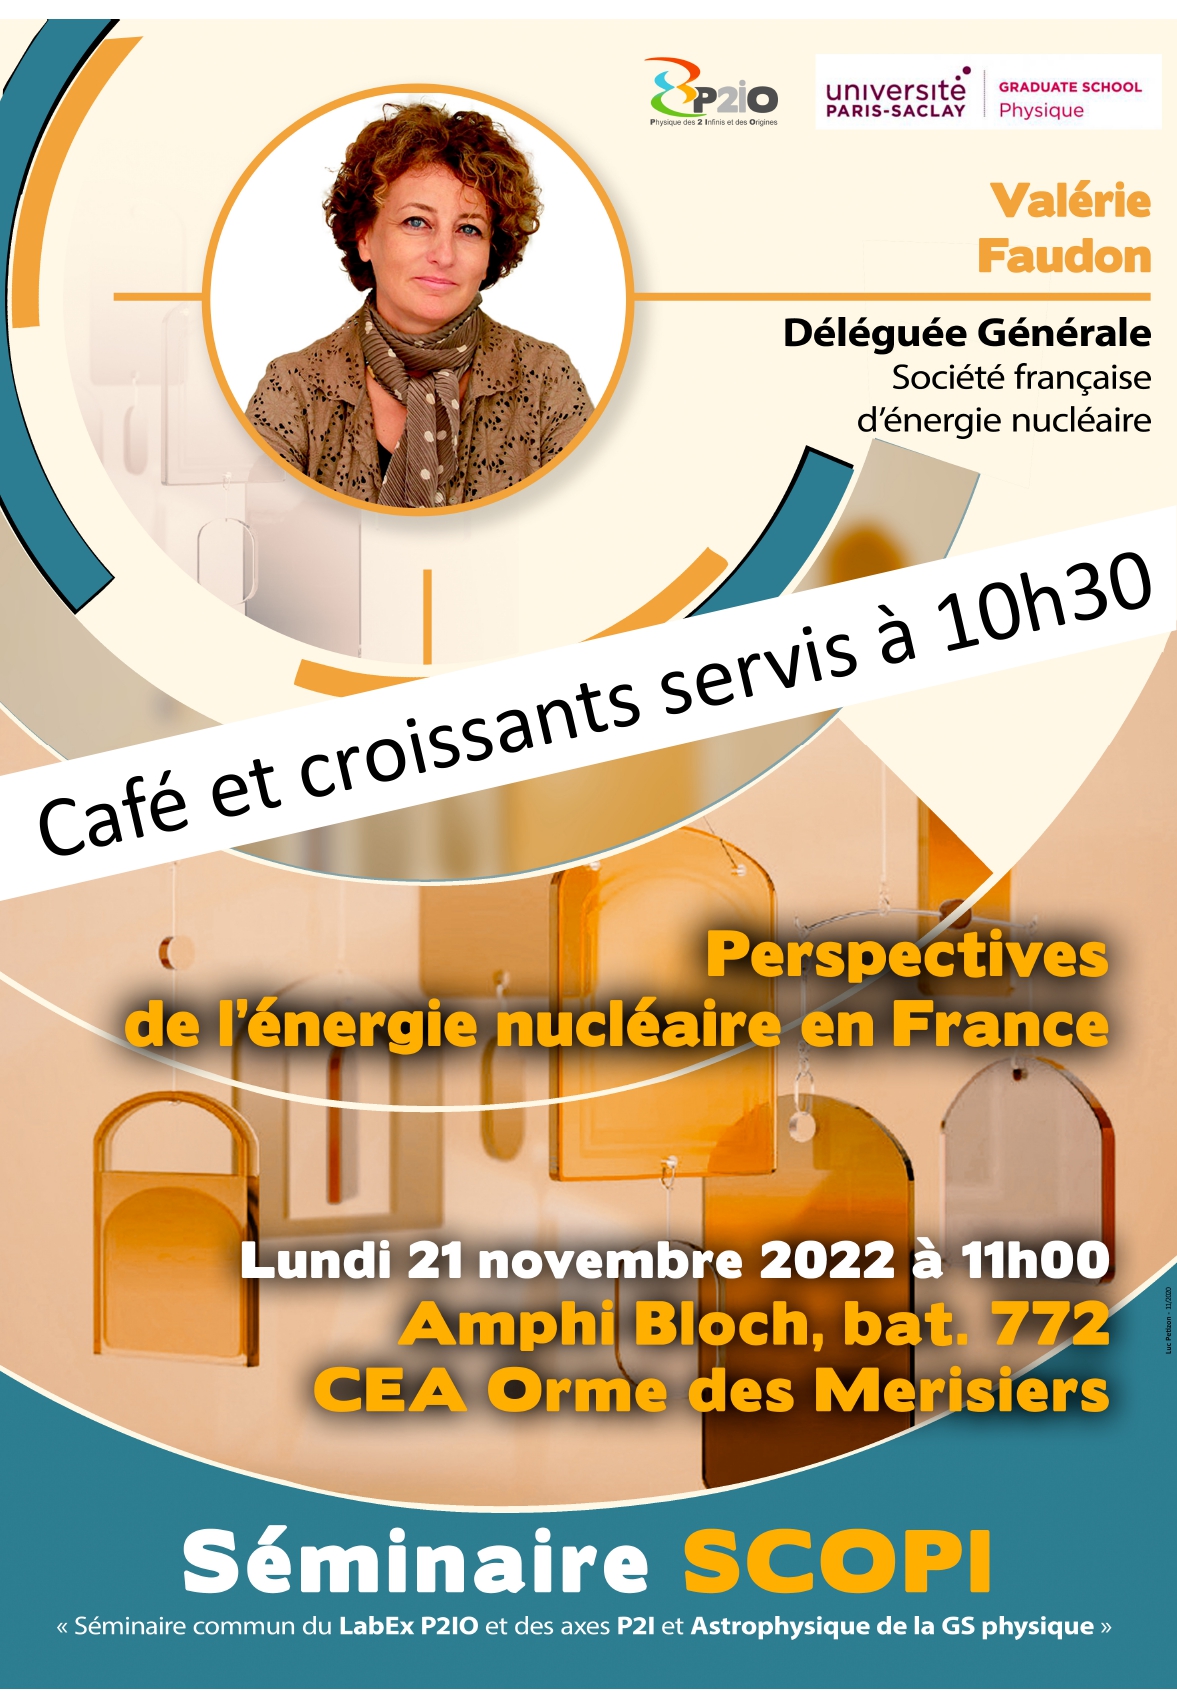 Le prochain séminaire SCOPI présenté par Valérie Faudon aura lieu le lundi 21 novembre à 10h30.